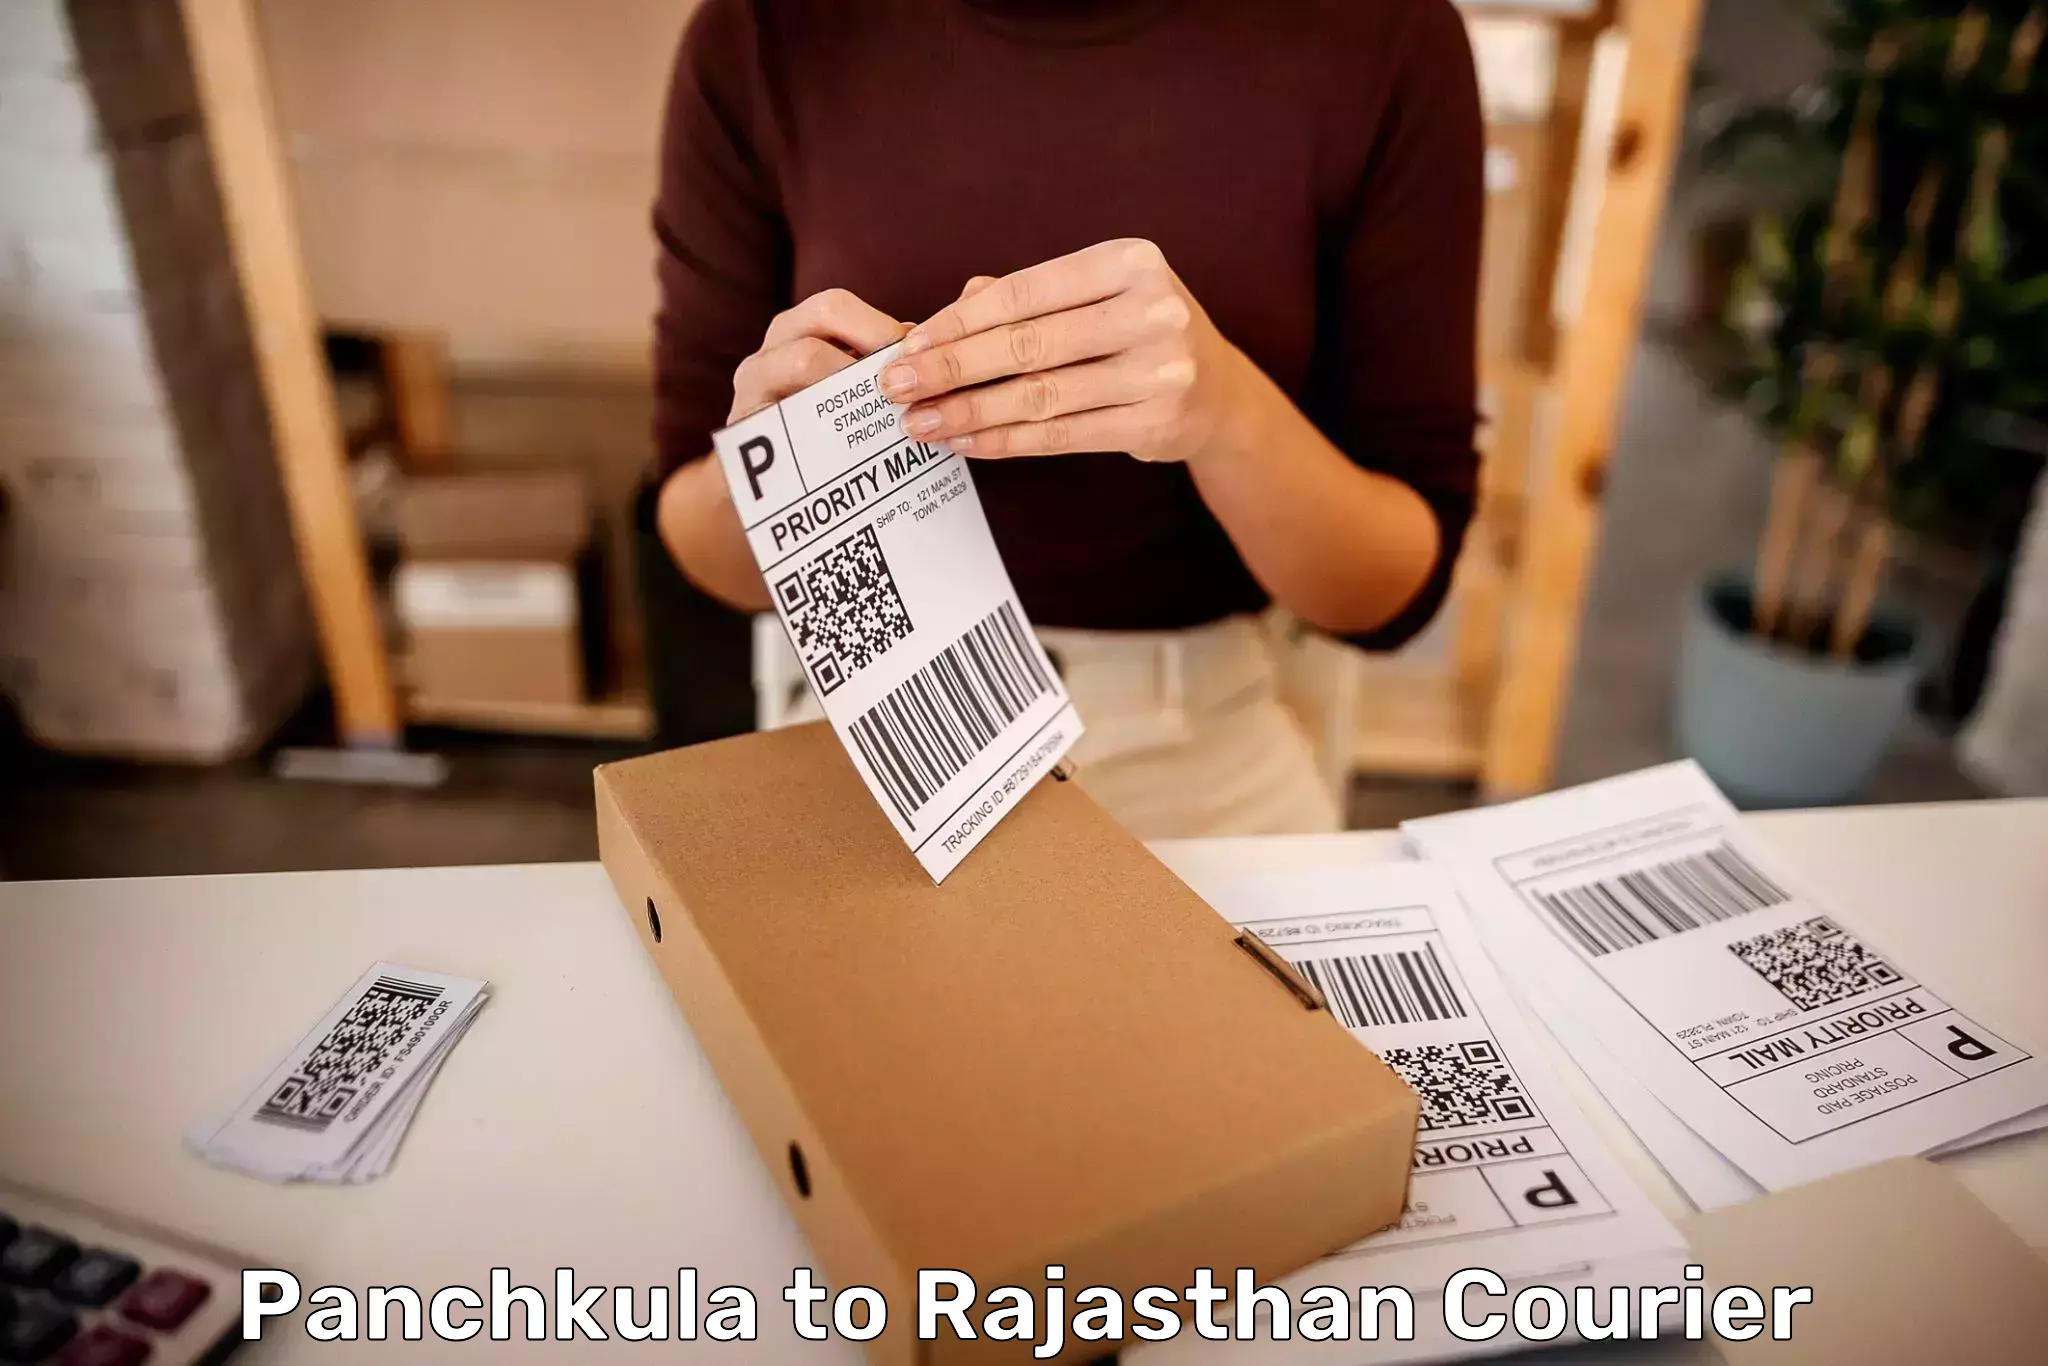 Baggage shipping experience Panchkula to Rajasthan